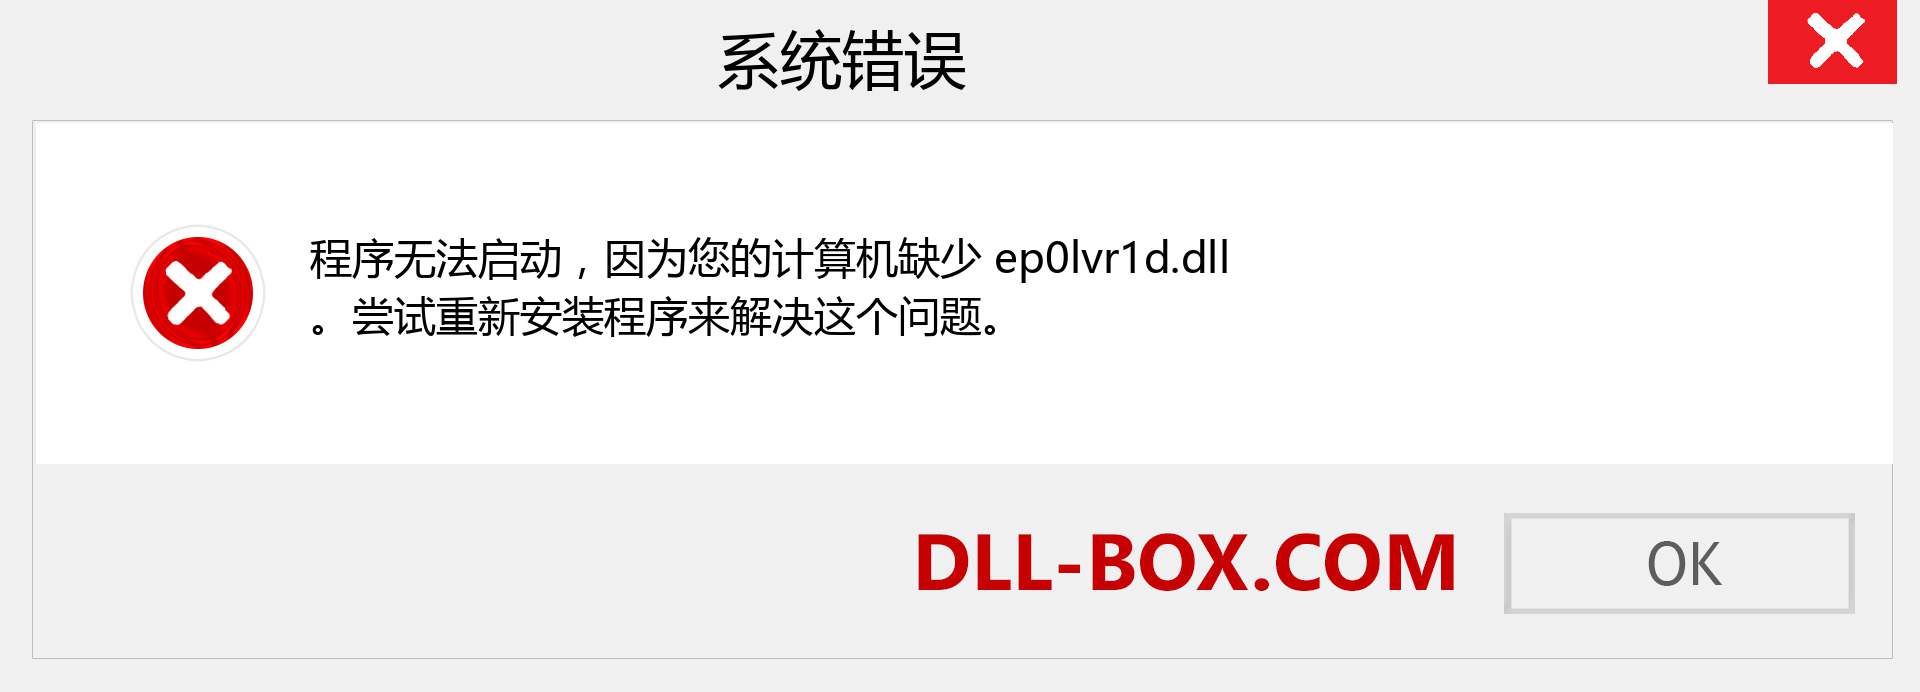 ep0lvr1d.dll 文件丢失？。 适用于 Windows 7、8、10 的下载 - 修复 Windows、照片、图像上的 ep0lvr1d dll 丢失错误